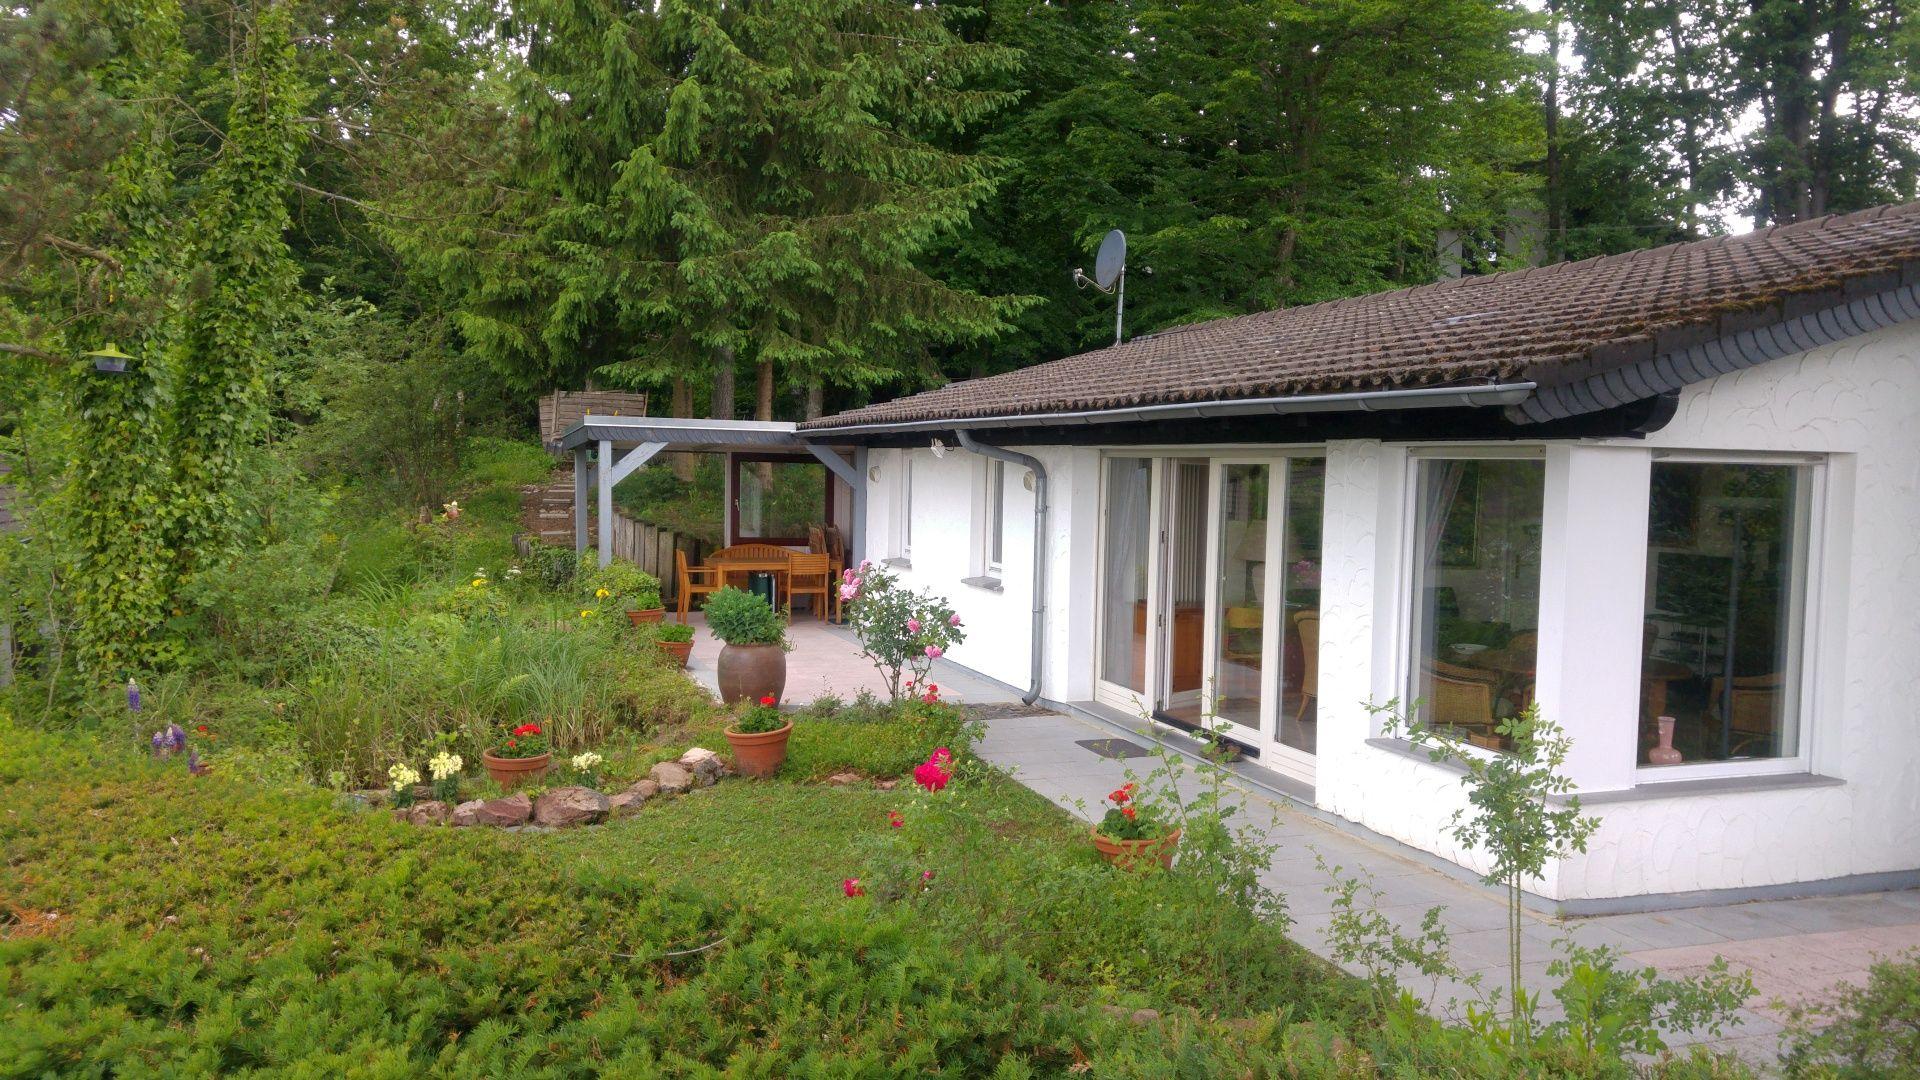 Wunderschönes freistehendes Ferienhaus mit So Ferienhaus in der Eifel